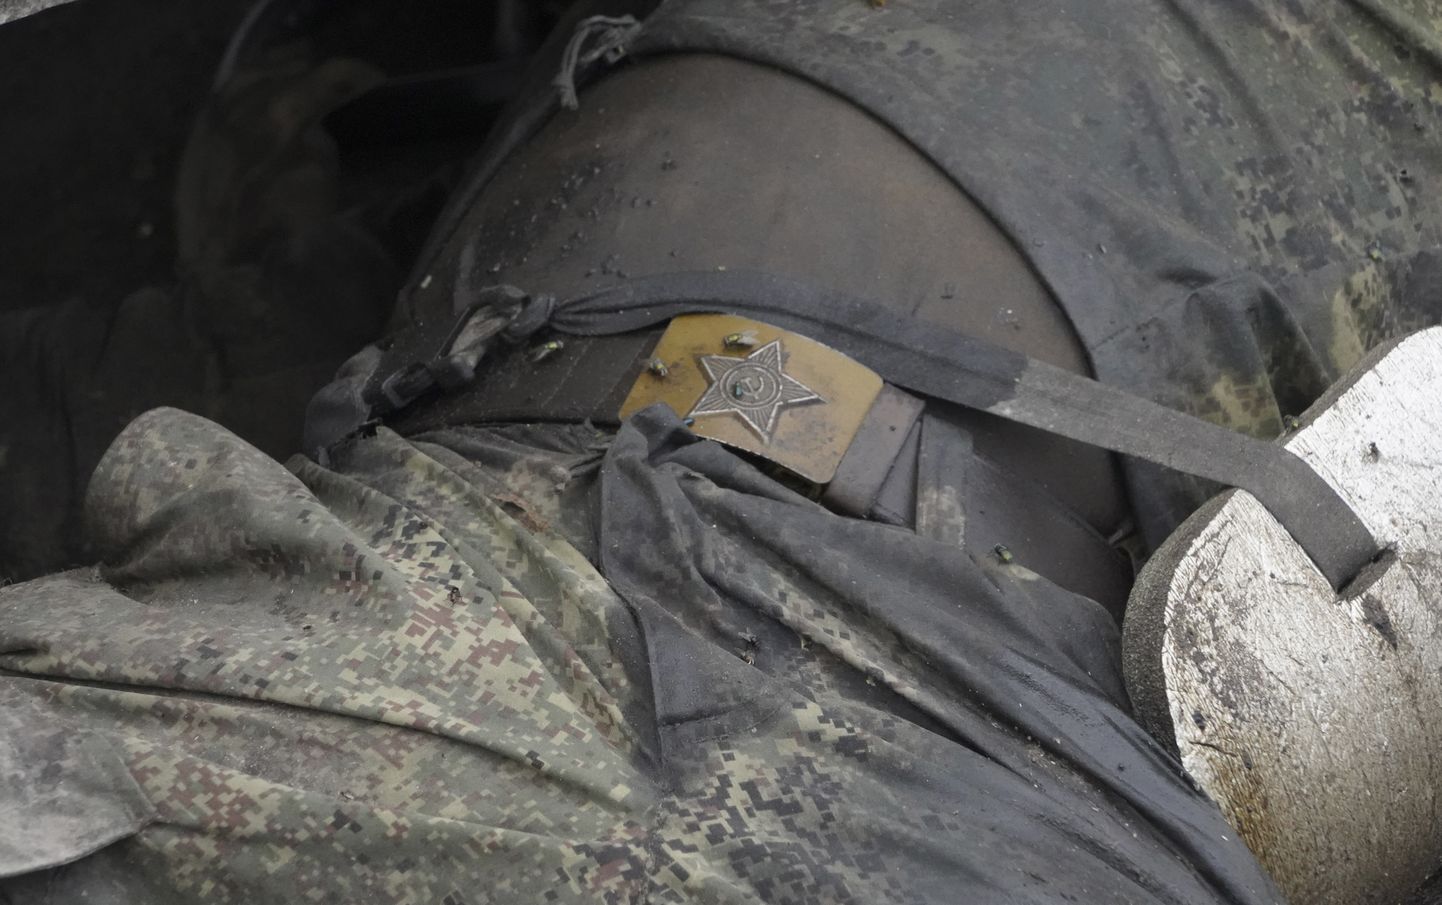 Звезда советской армии на ремне убитого российского солдата. Купянск, Харьковская область, октябрь 2022.